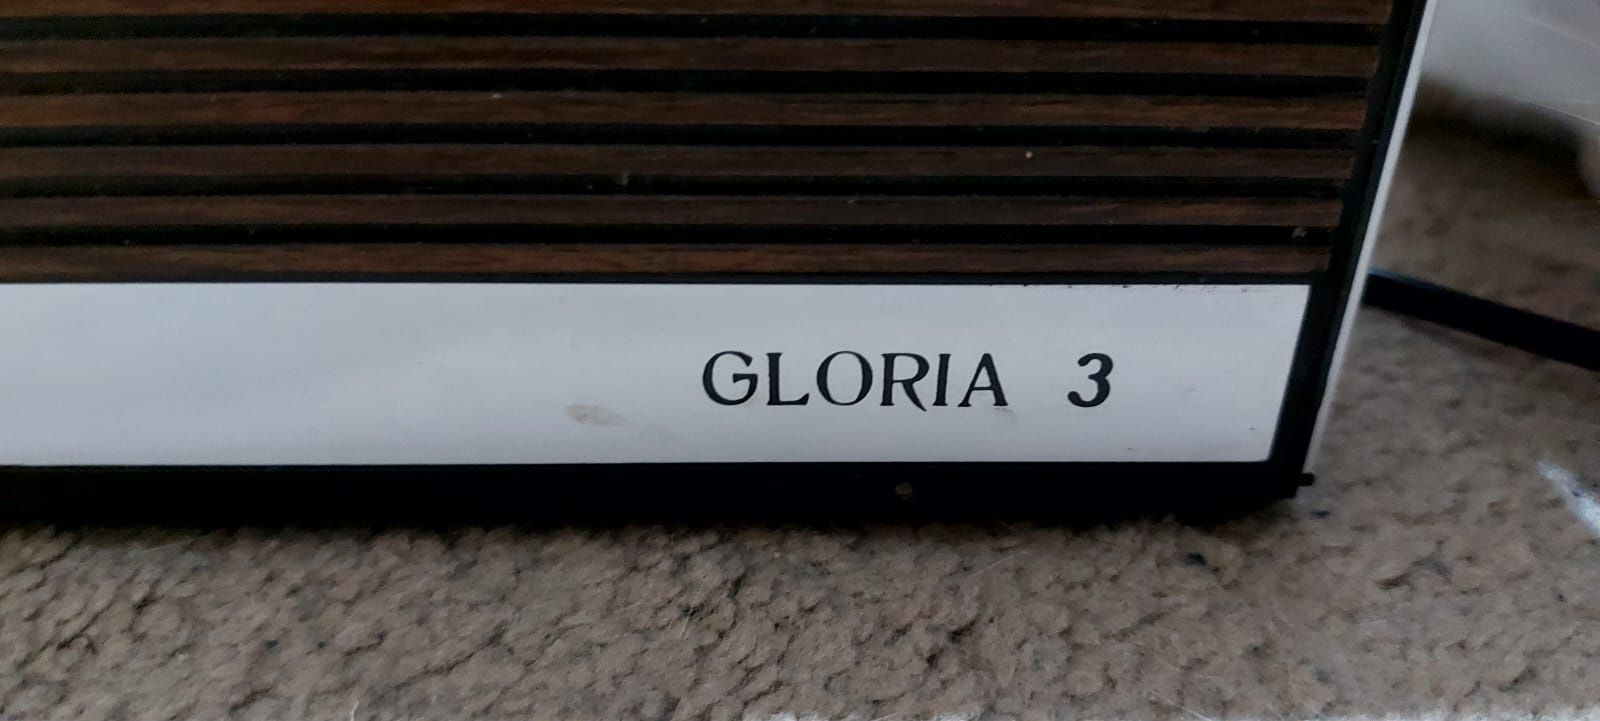 Radio Gloria 3 - vechi romanesc